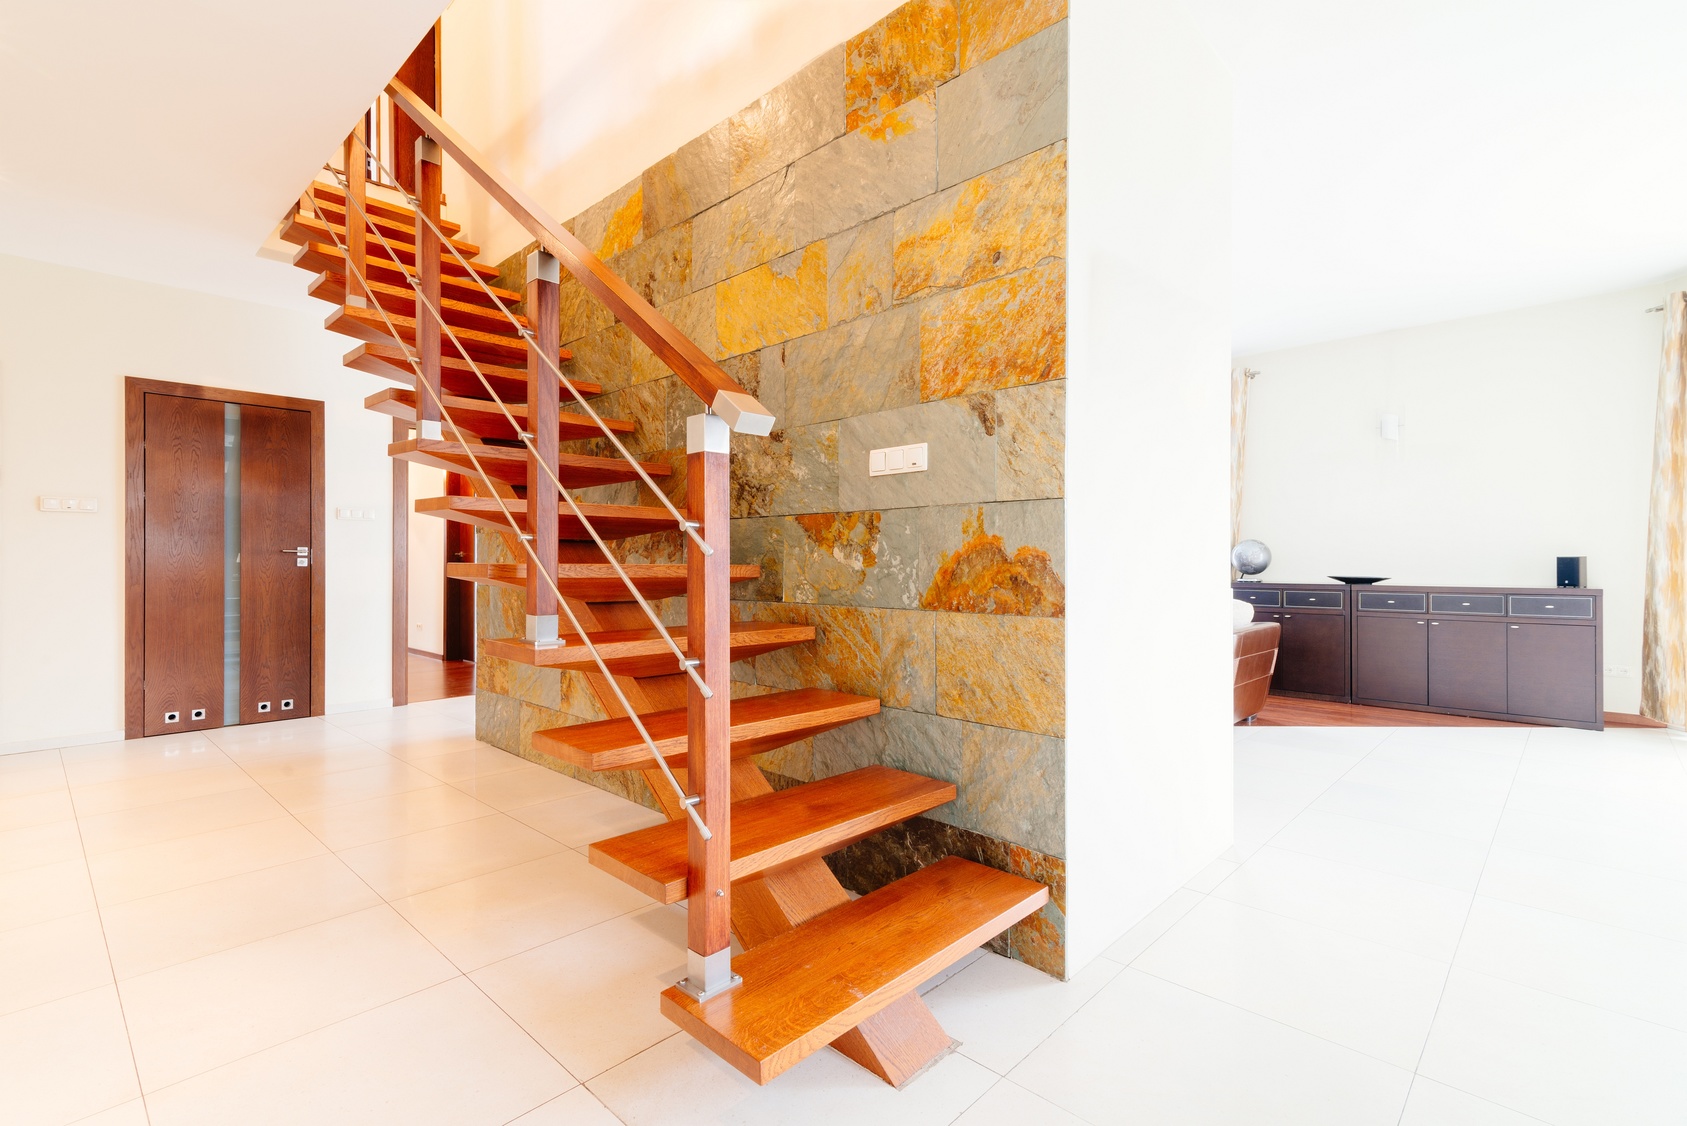 Choisissez votre escalier en fonction de l'usage, sans négliger l'esthétique. © Fotolia